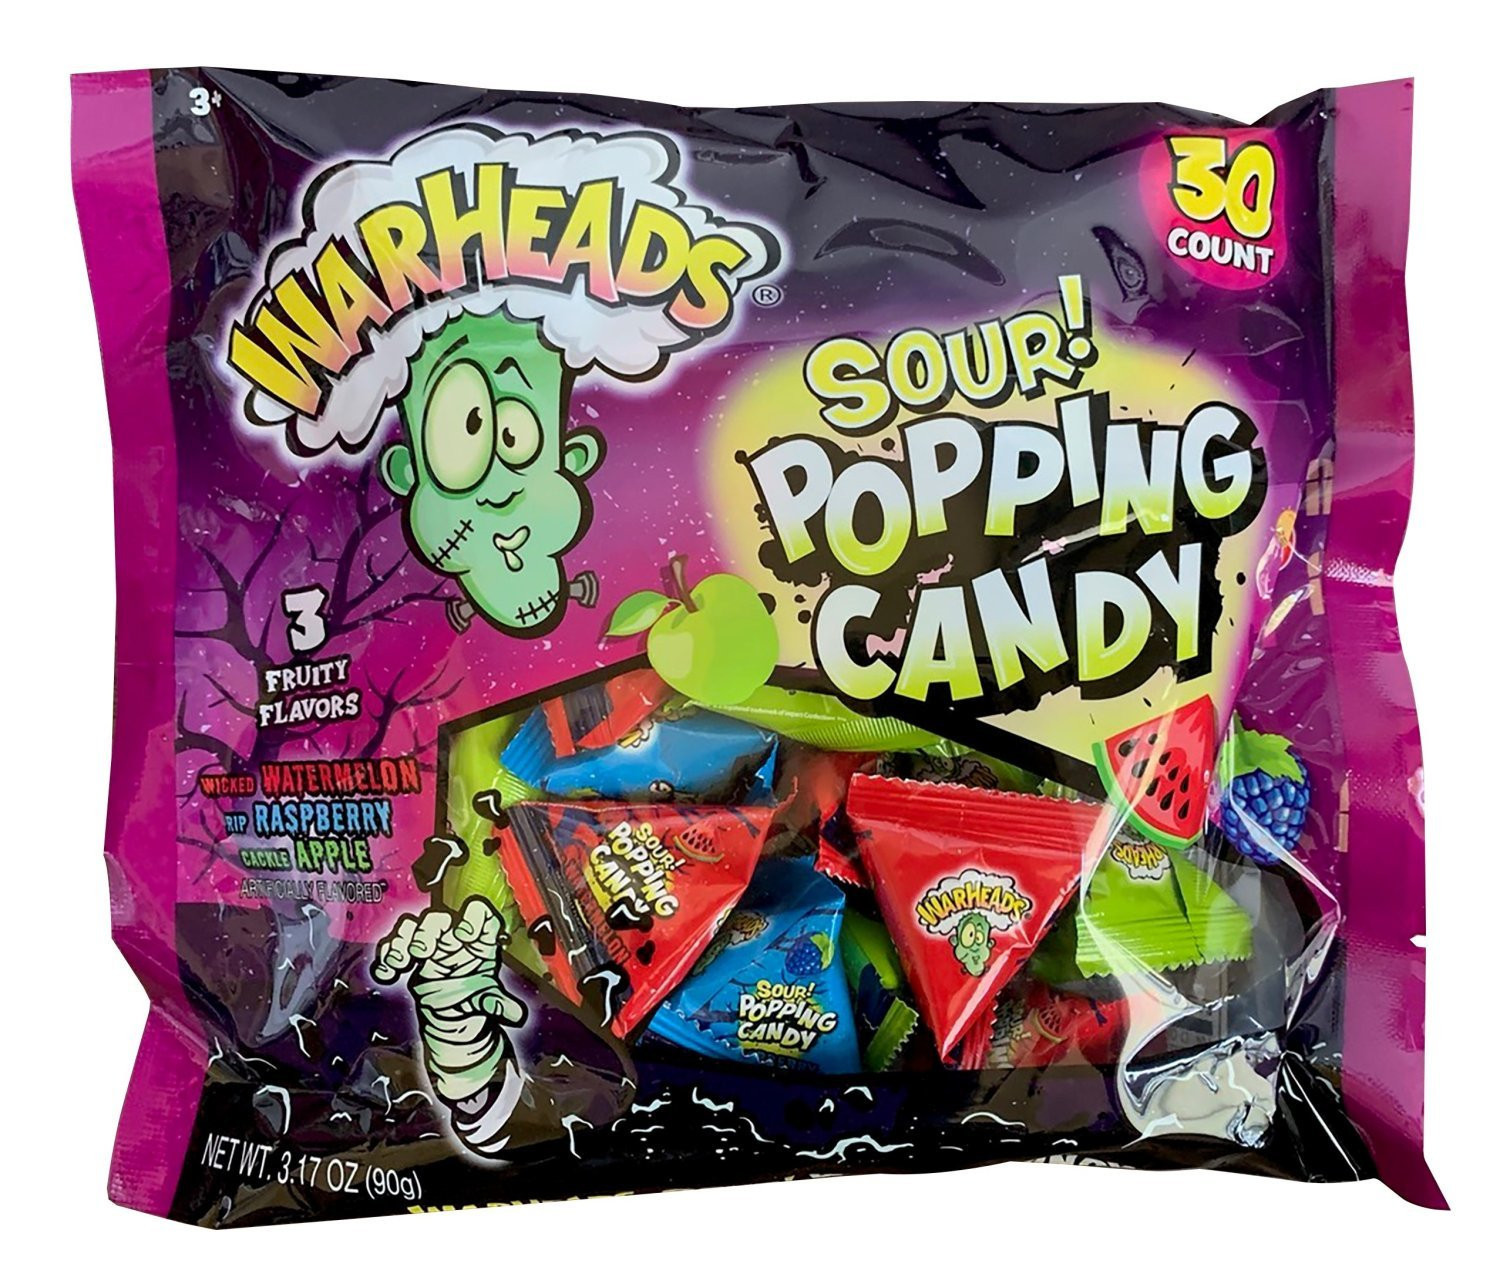 Waheads Warheads Halloween 30ct. Popping Candy Laydown Bag 3.17oz.